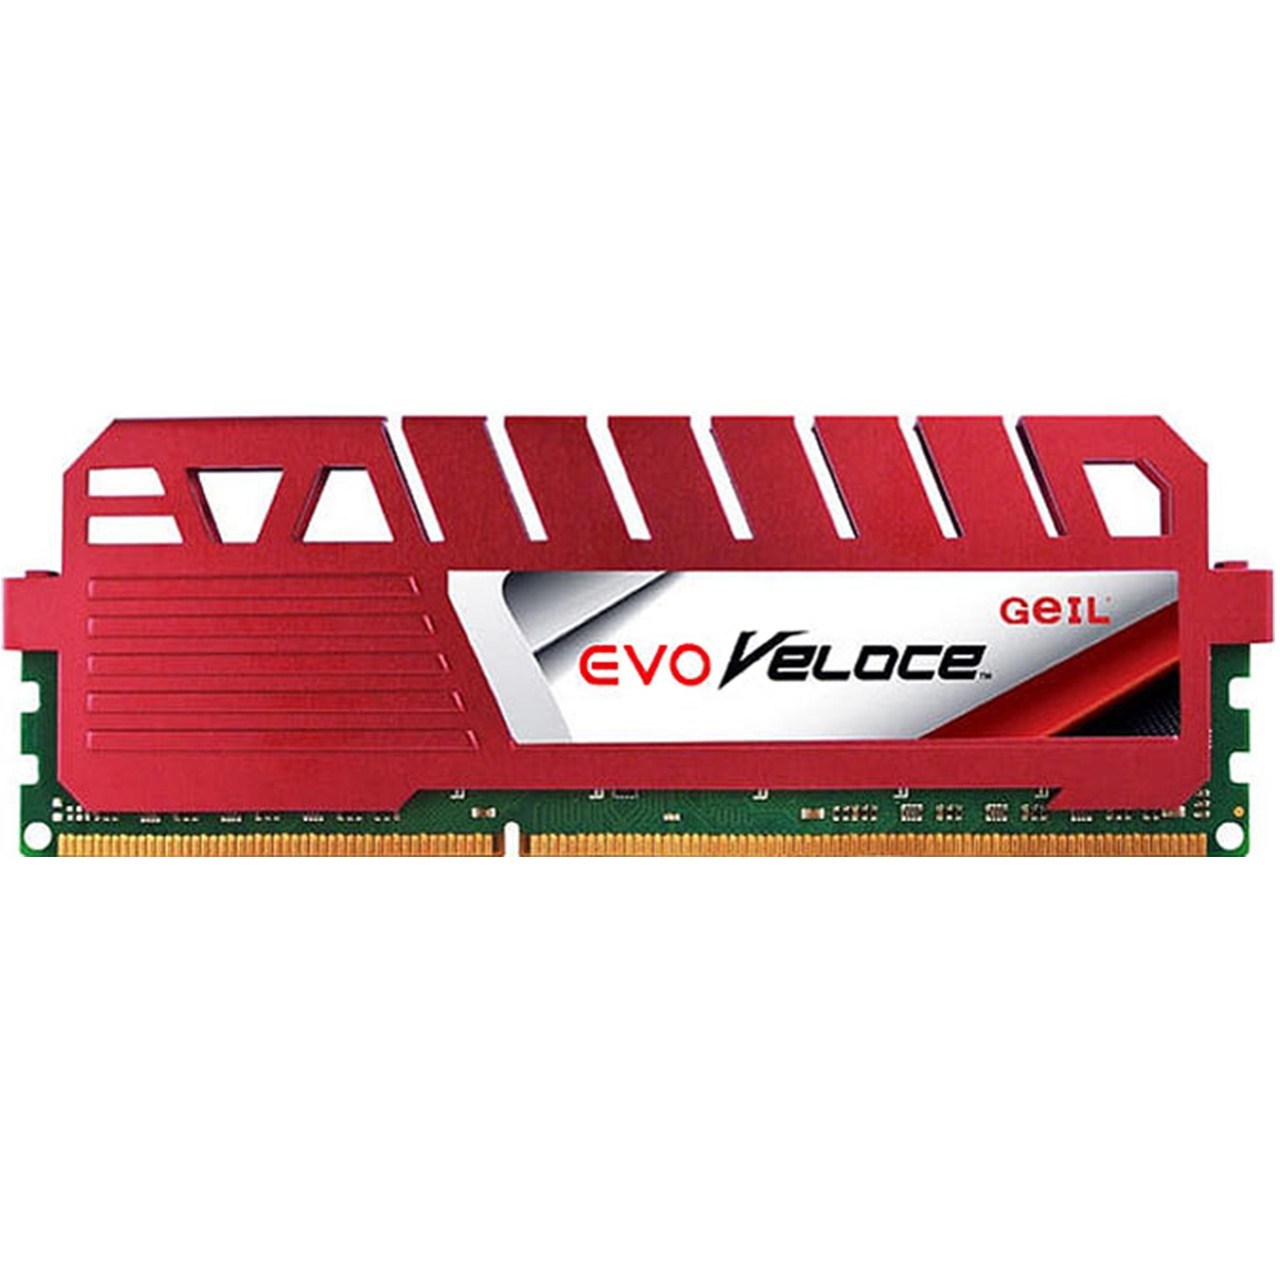 رم دسکتاپ DDR3 تک کاناله 1600 مگاهرتز CL11 گیل مدل Evo Veloce ظرفیت 8 گیگابایت